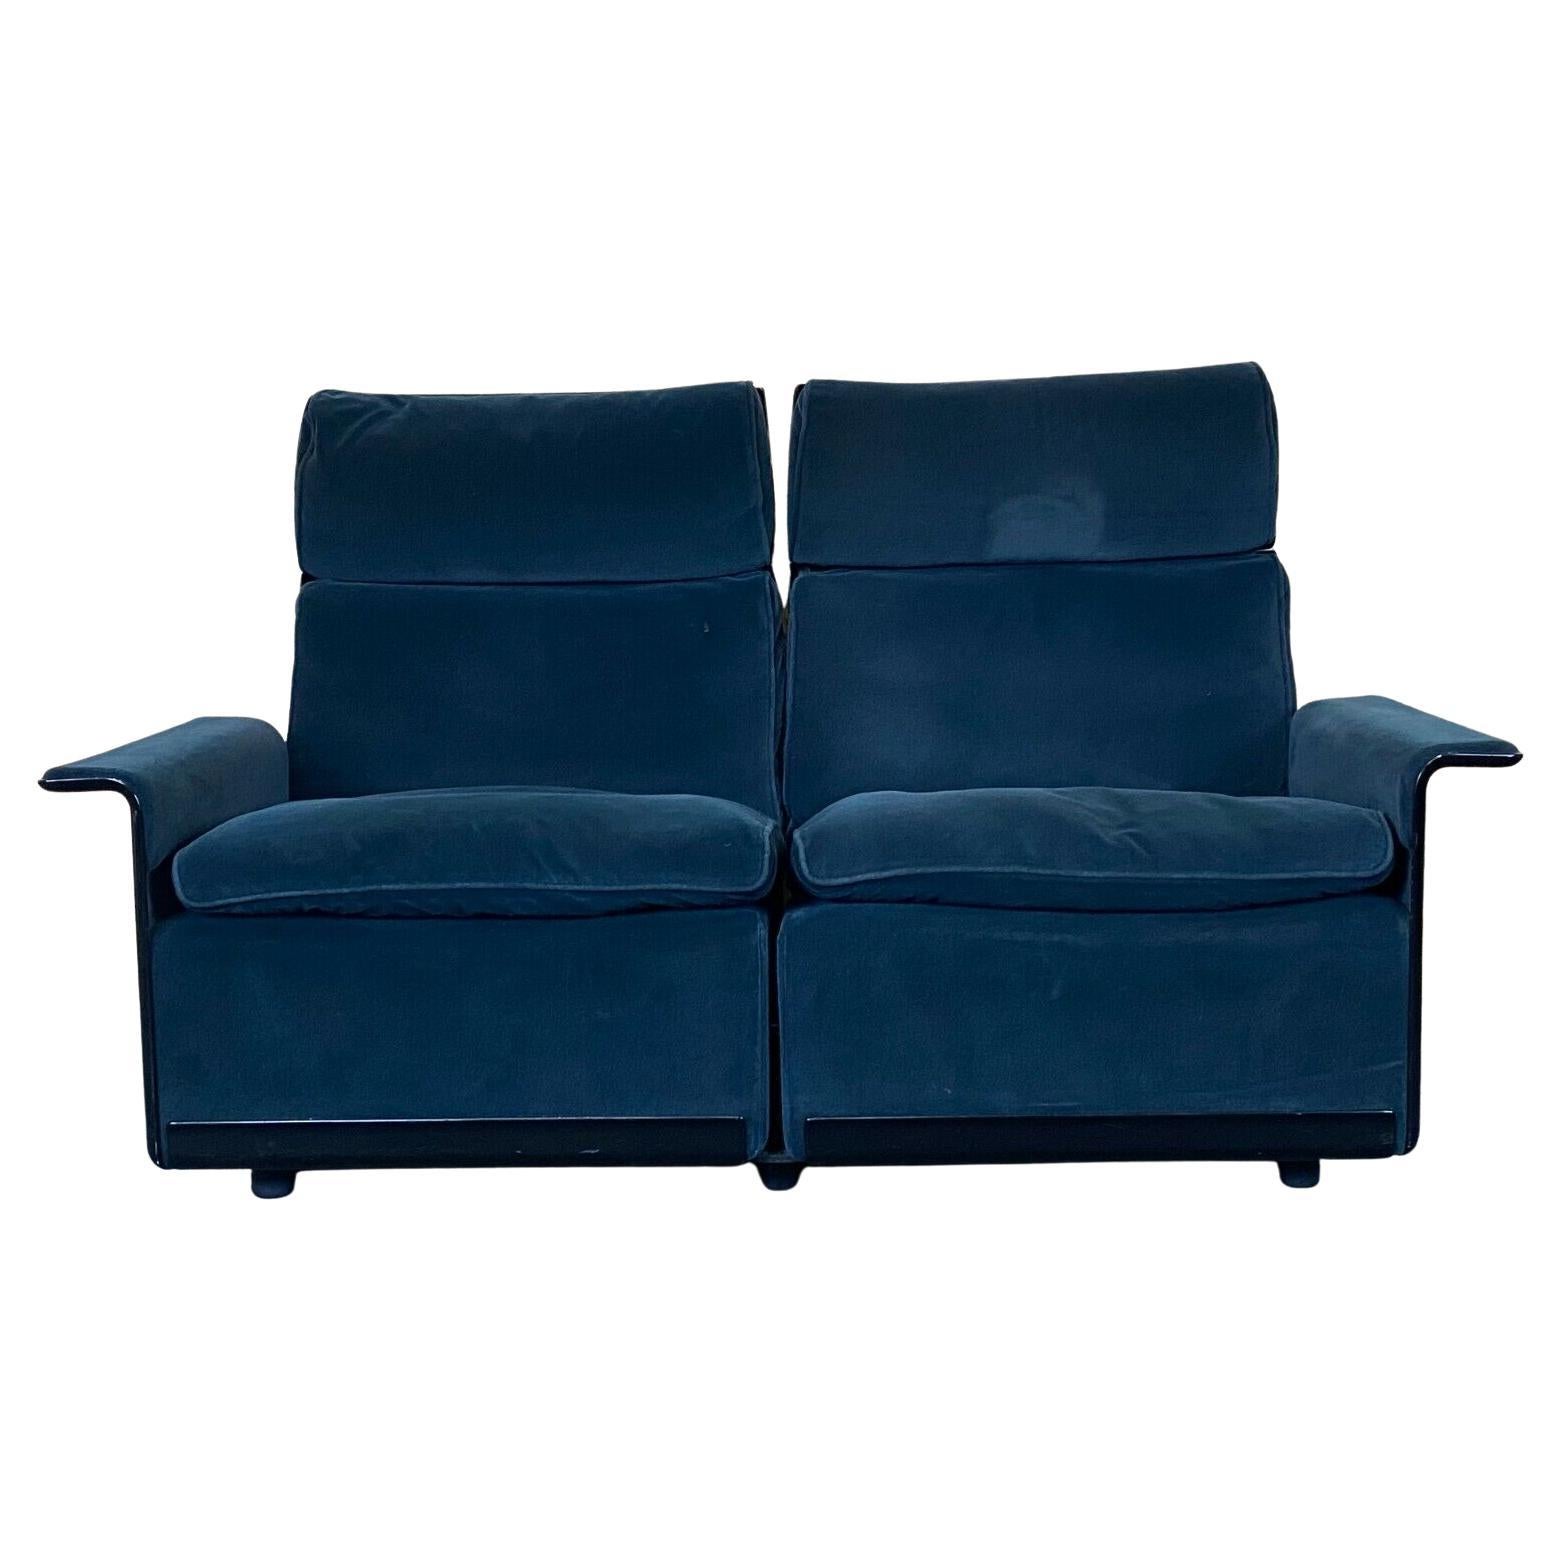 Fauteuil Dieter Rams pour Vitsoe Program 620 Design Couch Fabric des années 60 70 en vente